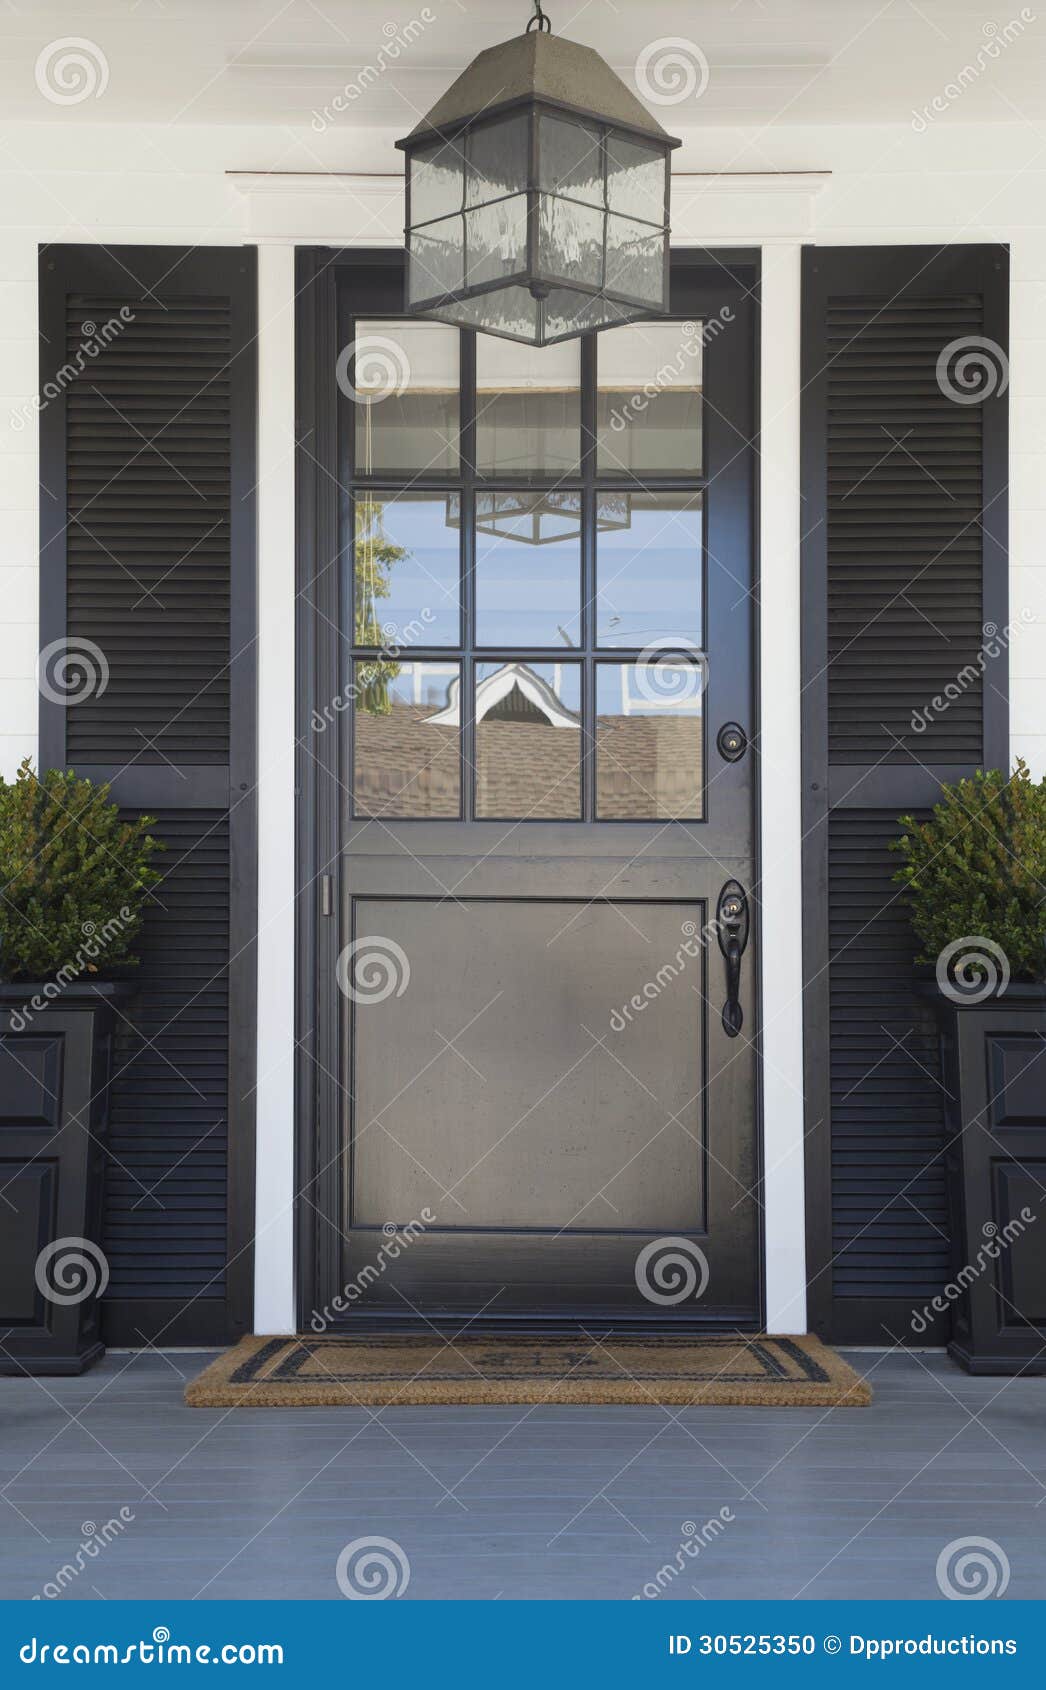 front door of an upscale home